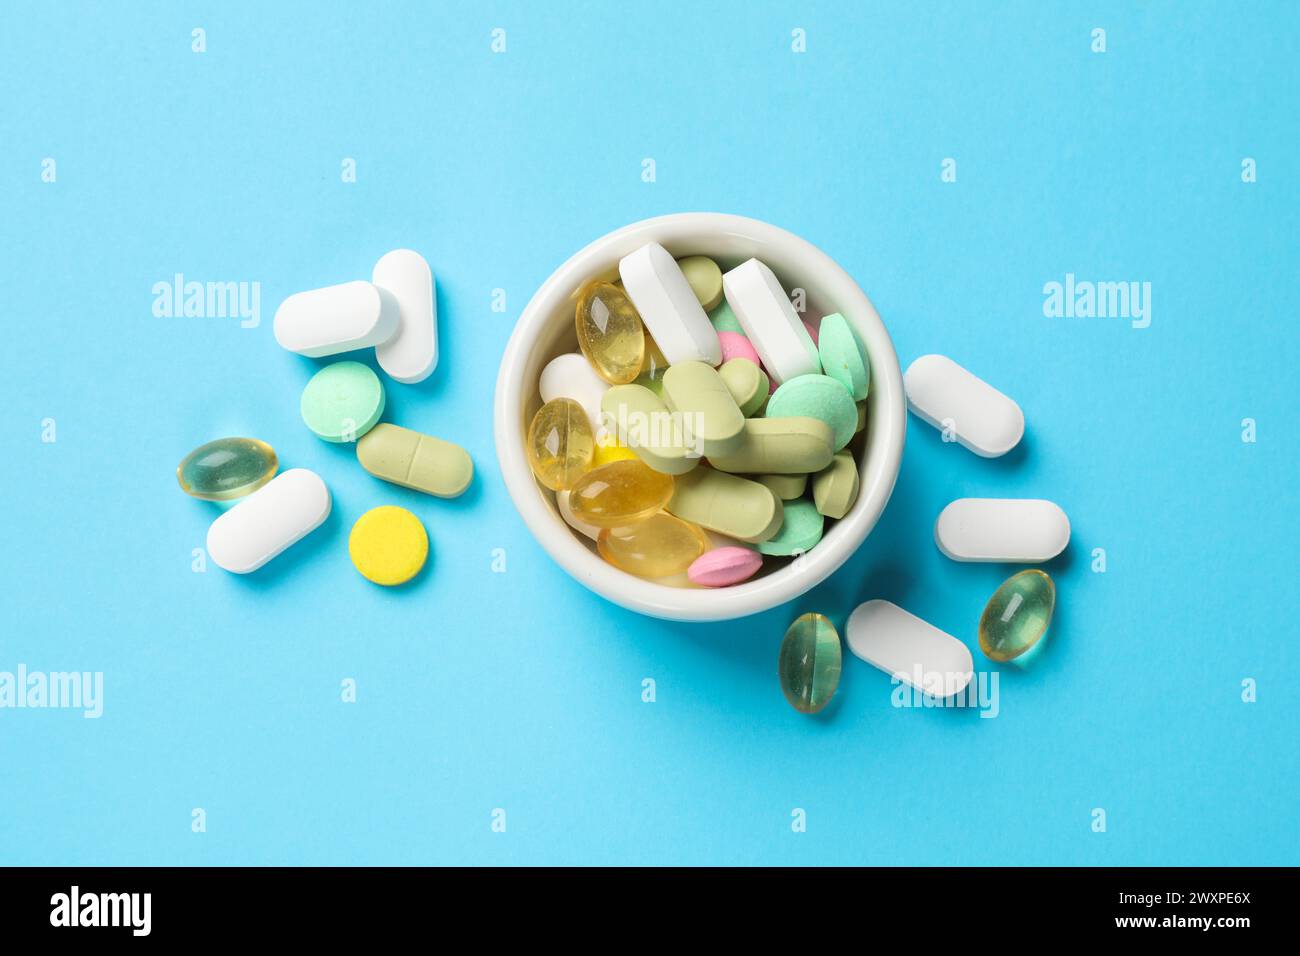 Diverse pillole vitaminiche nel recipiente su sfondo azzurro, vista dall'alto Foto Stock